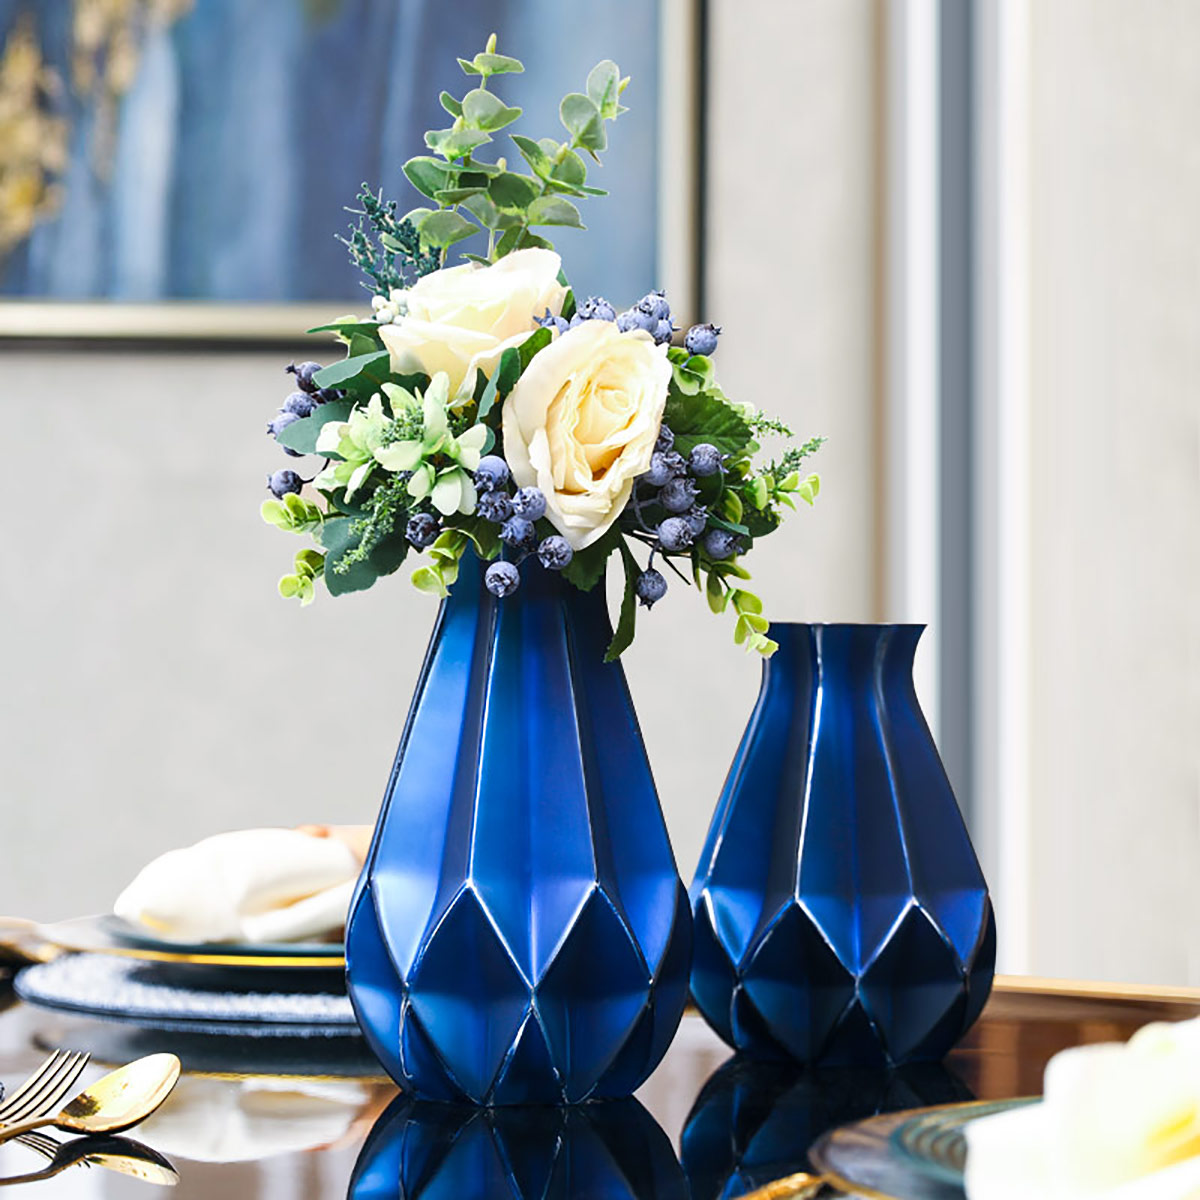 现代简约蓝色陶瓷花瓶创意欧式客厅插花家居电视柜餐桌装饰品摆件